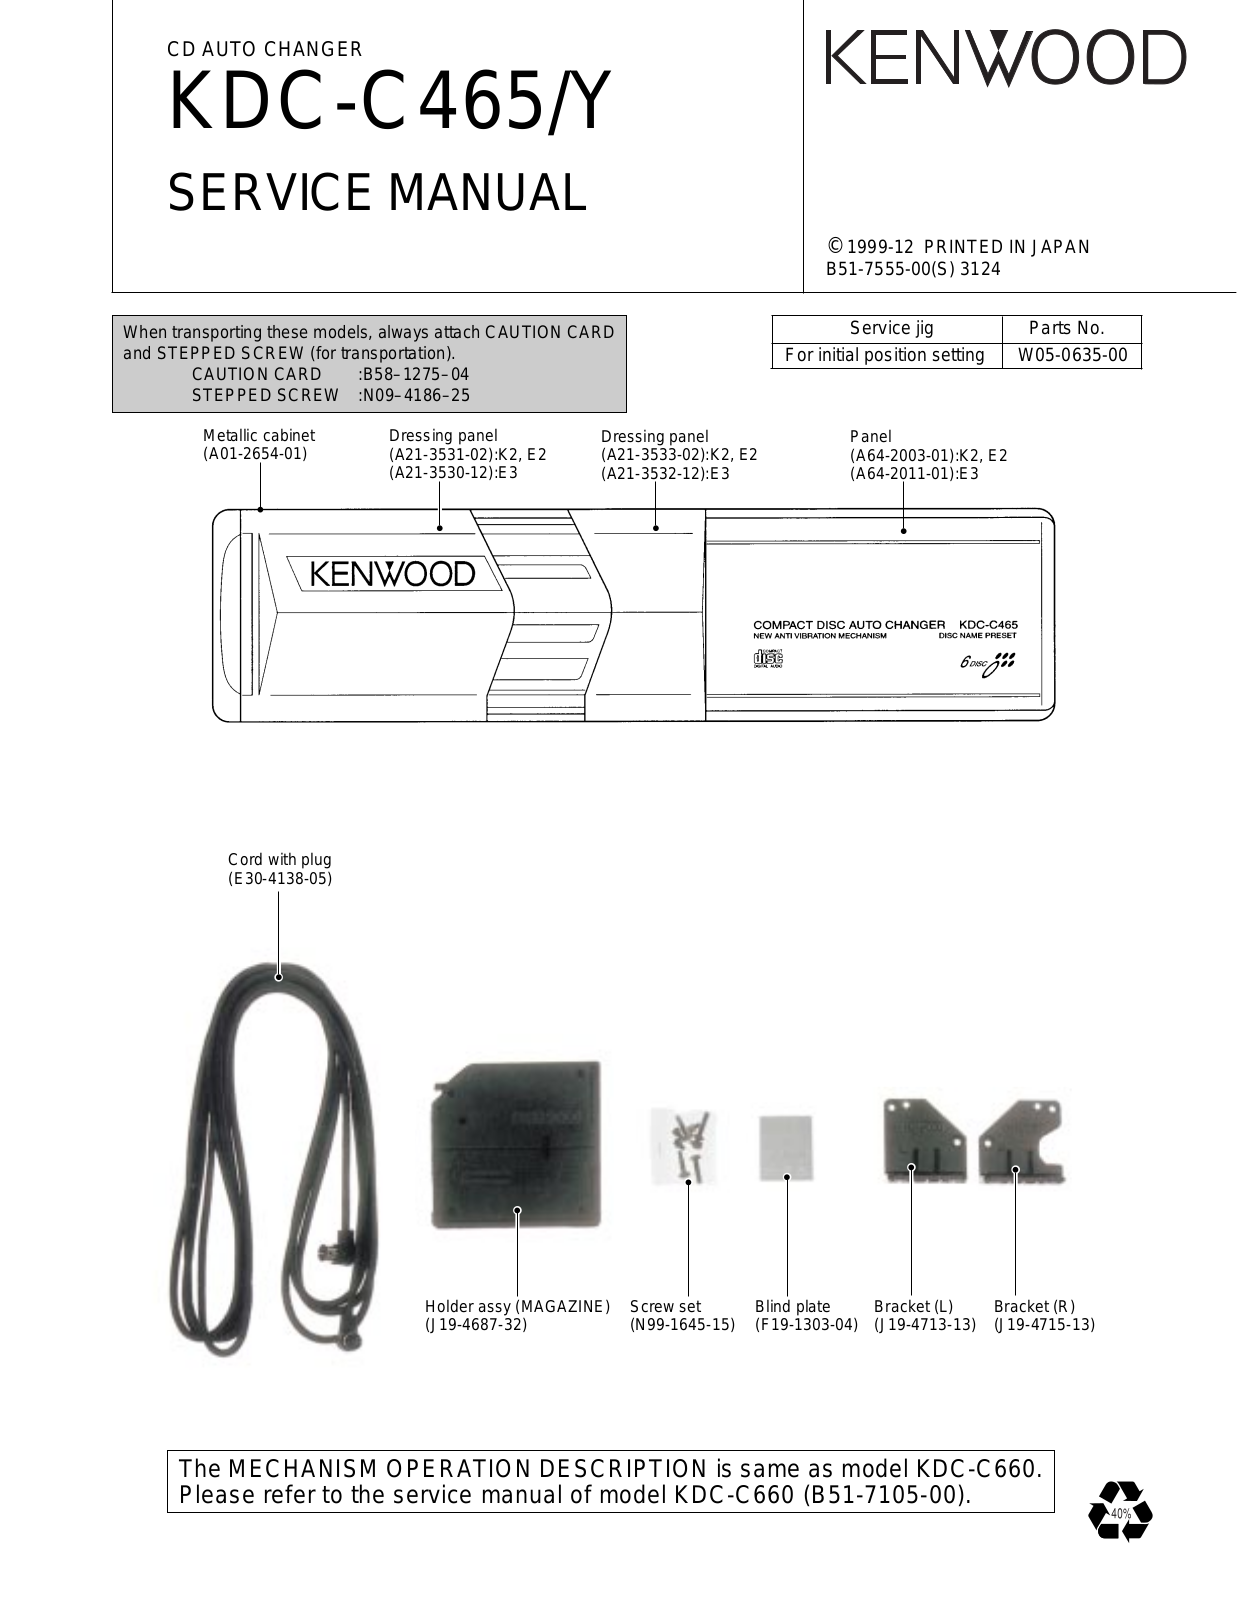 Kenwood KDC-C465Y Service Manual